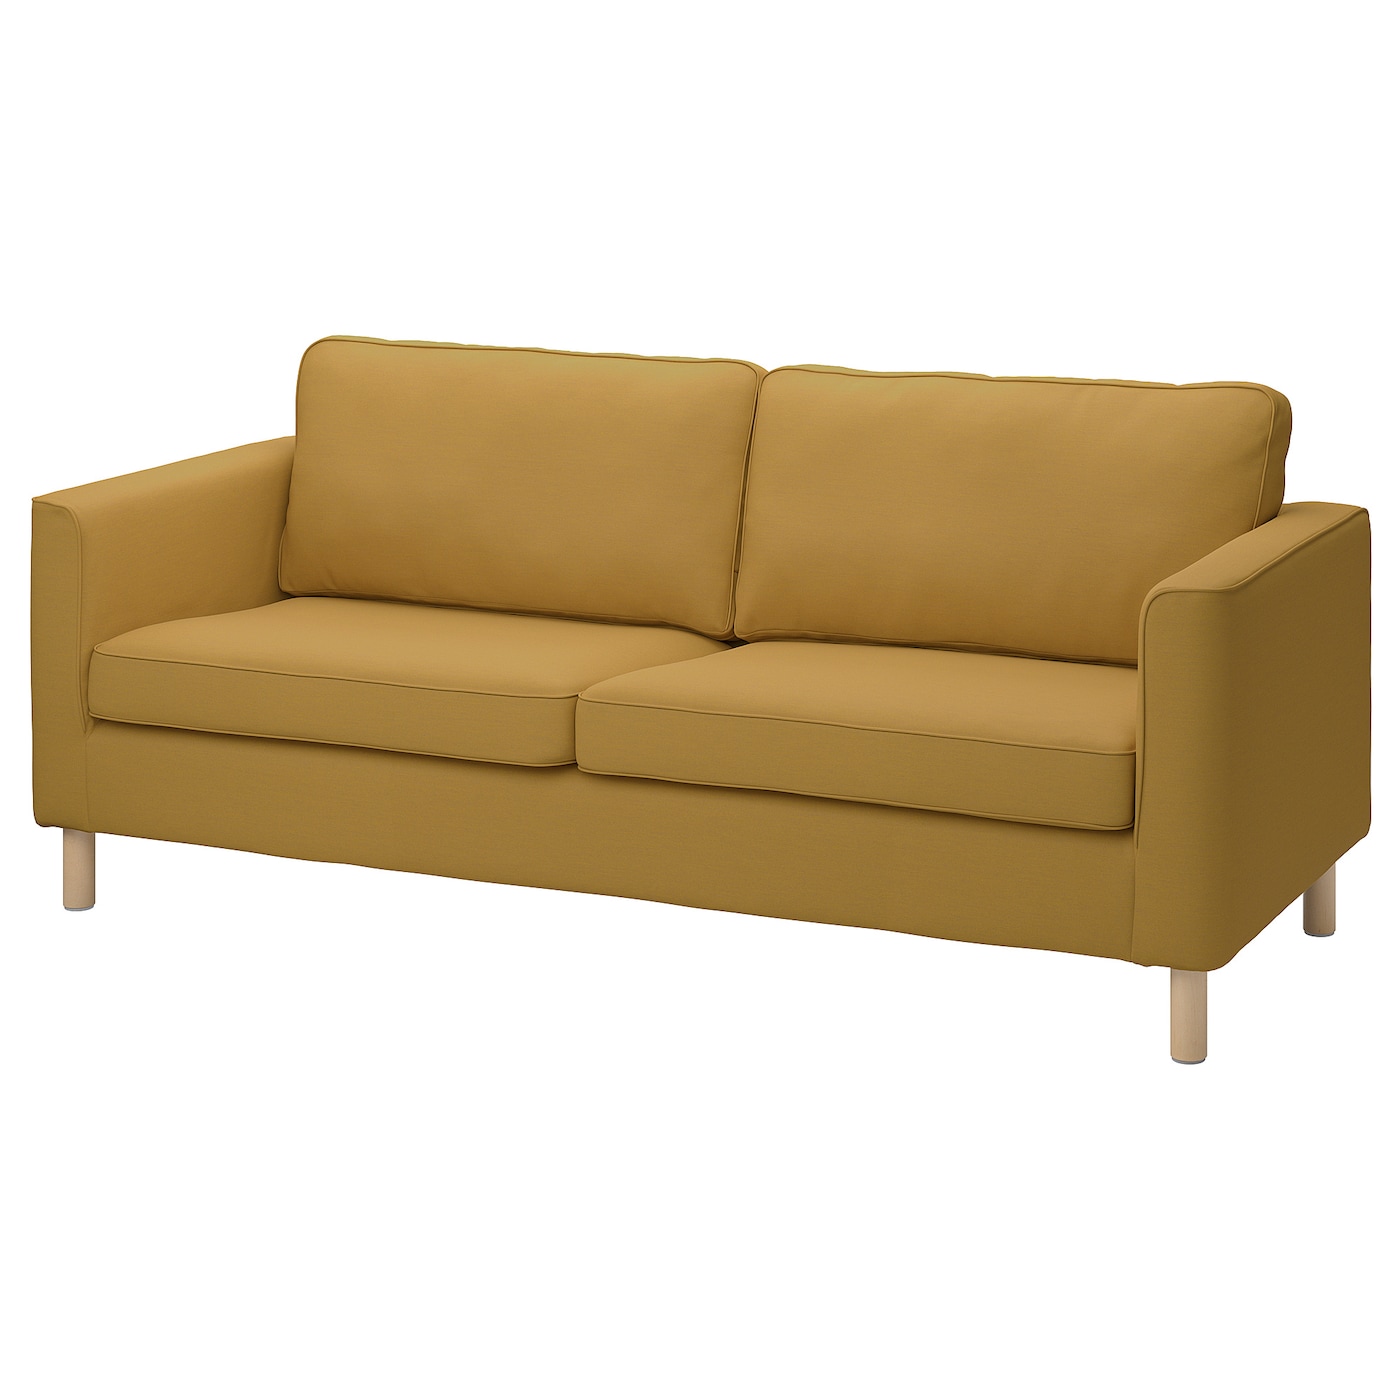 4 шт комод комод шкаф диван сменные ножки диван подставка для кресла ножки деревянные ножки для стола ПЭРУП 3-местный диван, Виссле желто-коричневый PÄRUP IKEA